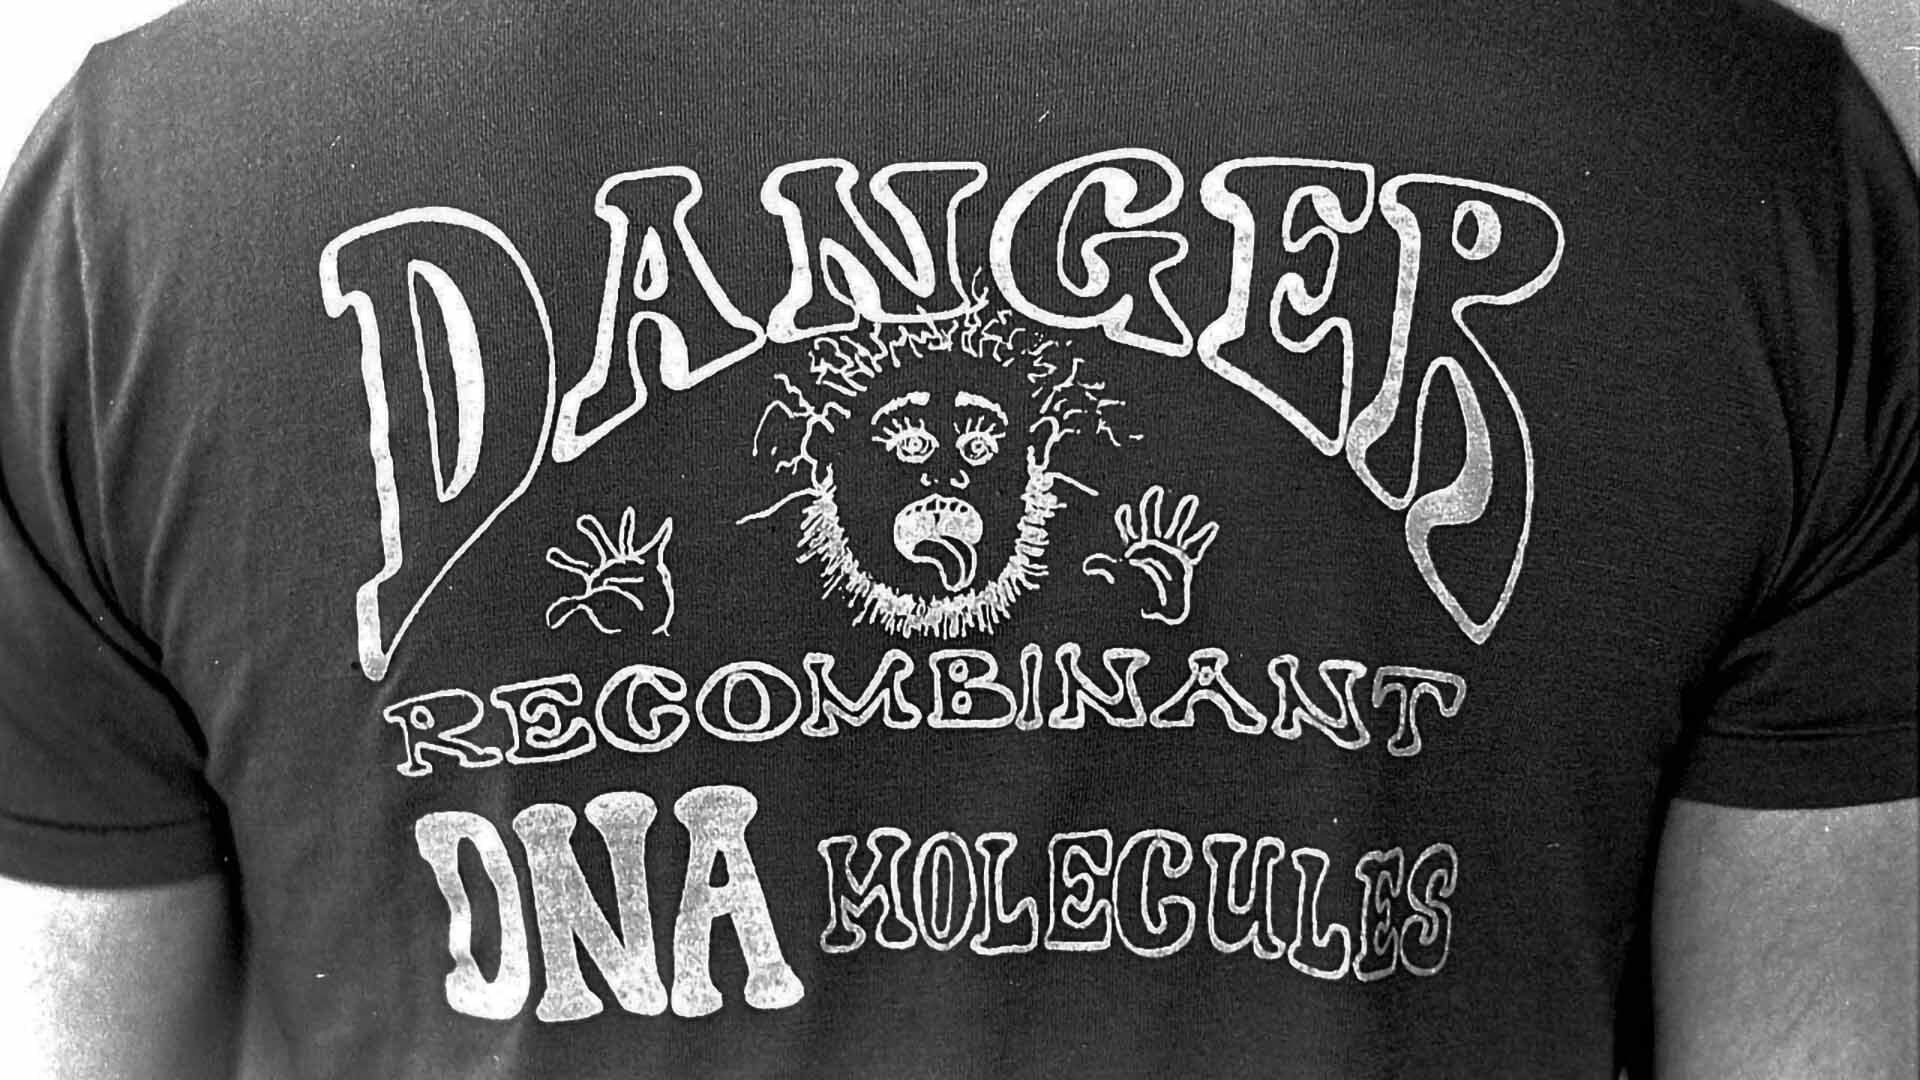 CSHL History Recomb DNA Shirt